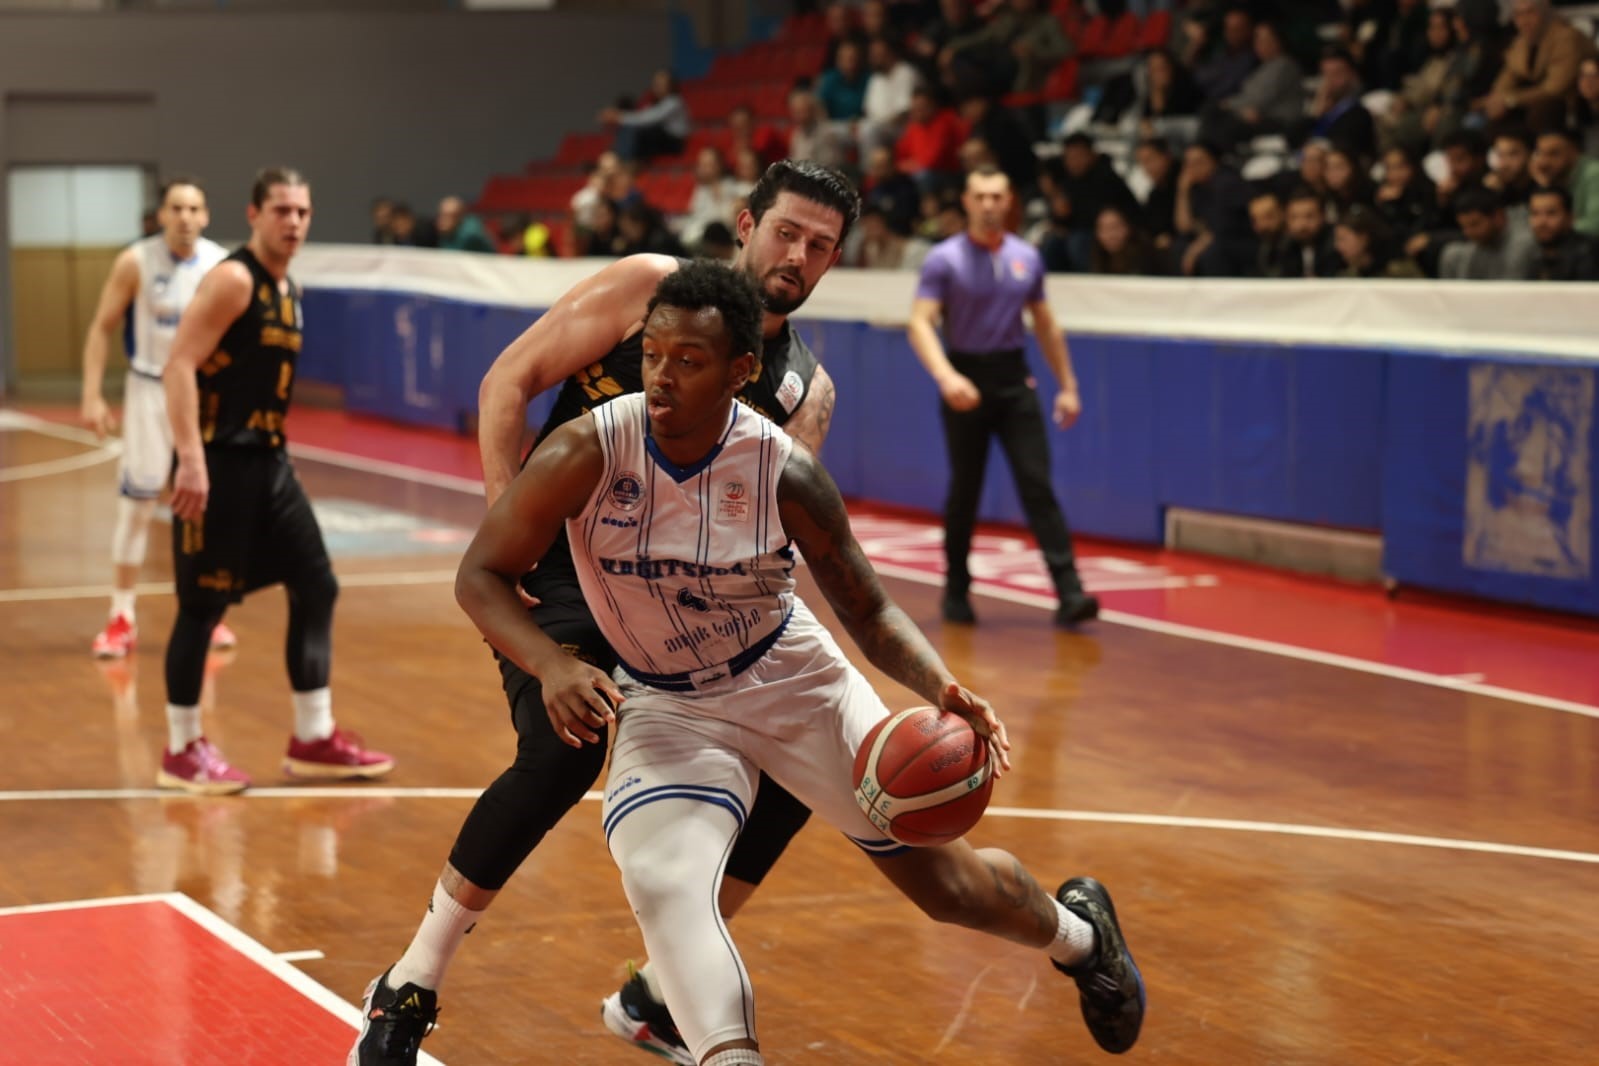 Türkiye Basketbol Ligi: Kocaeli BŞB Kağıtspor: 83 - Iğdır Basketbol: 68 